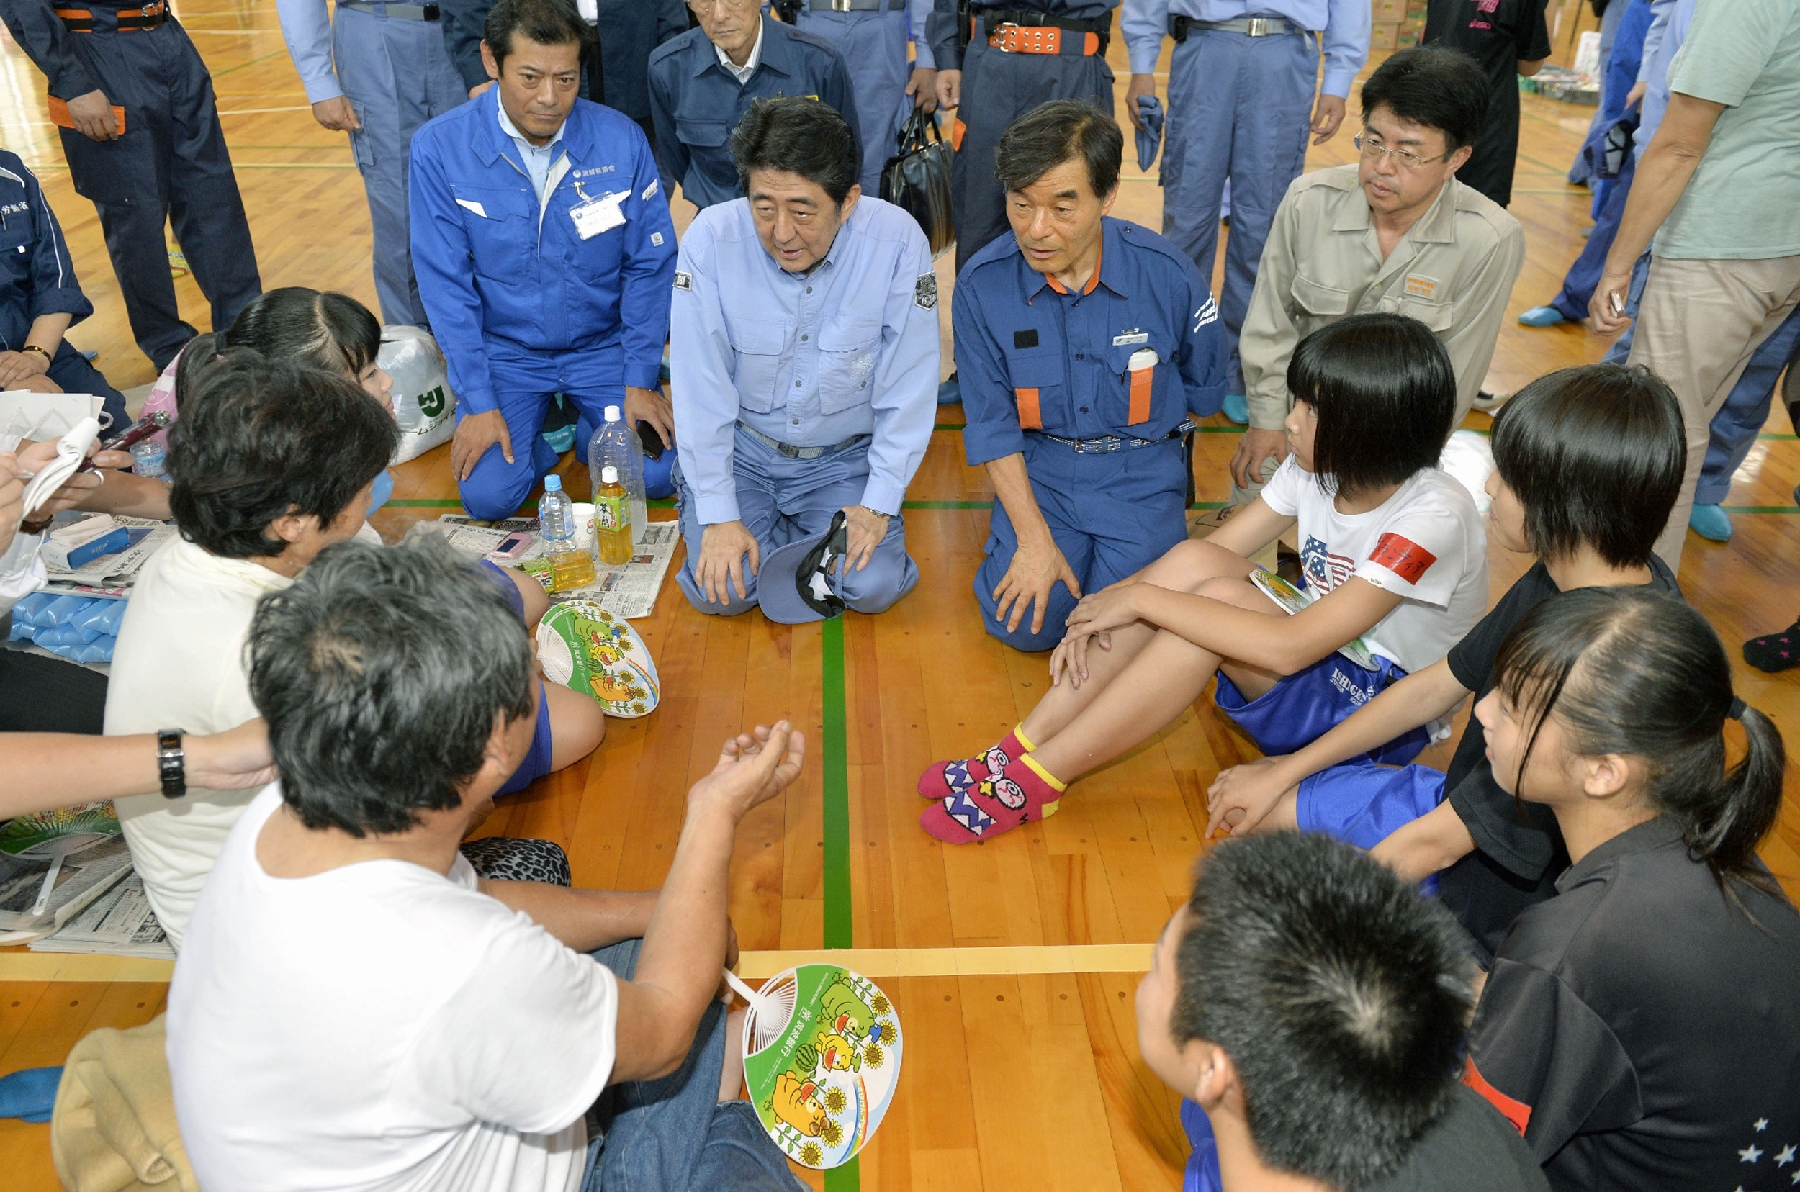 Inondations au Japon: le Premier ministre sur les lieux, les secours à la recherche des disparus